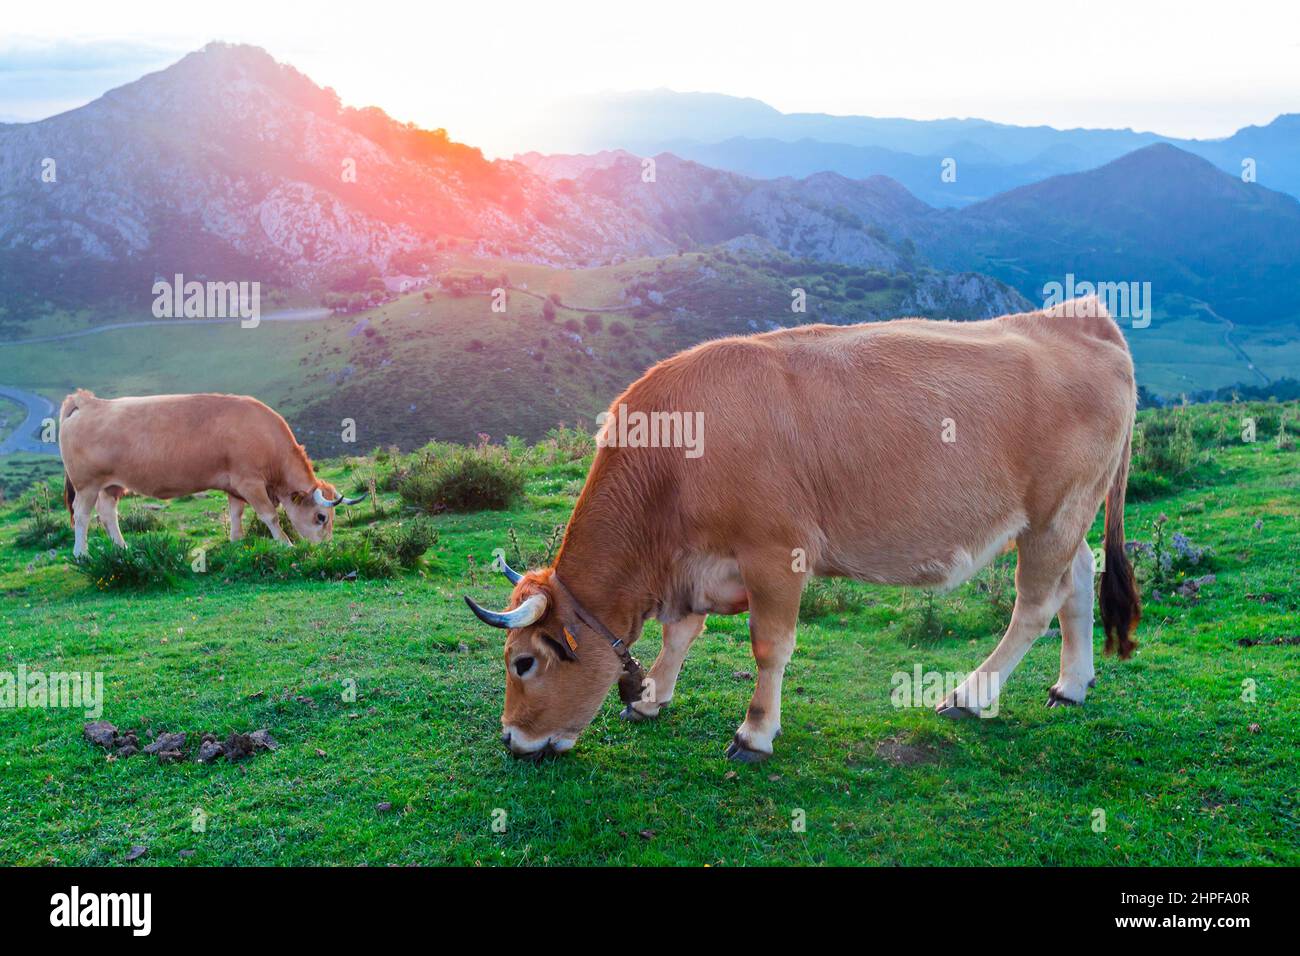 Asturian Mountain Cattle Kuh sitzt auf dem Rasen in einem Nationalpark zwischen den Bergen bei Sonnenuntergang Stockfoto